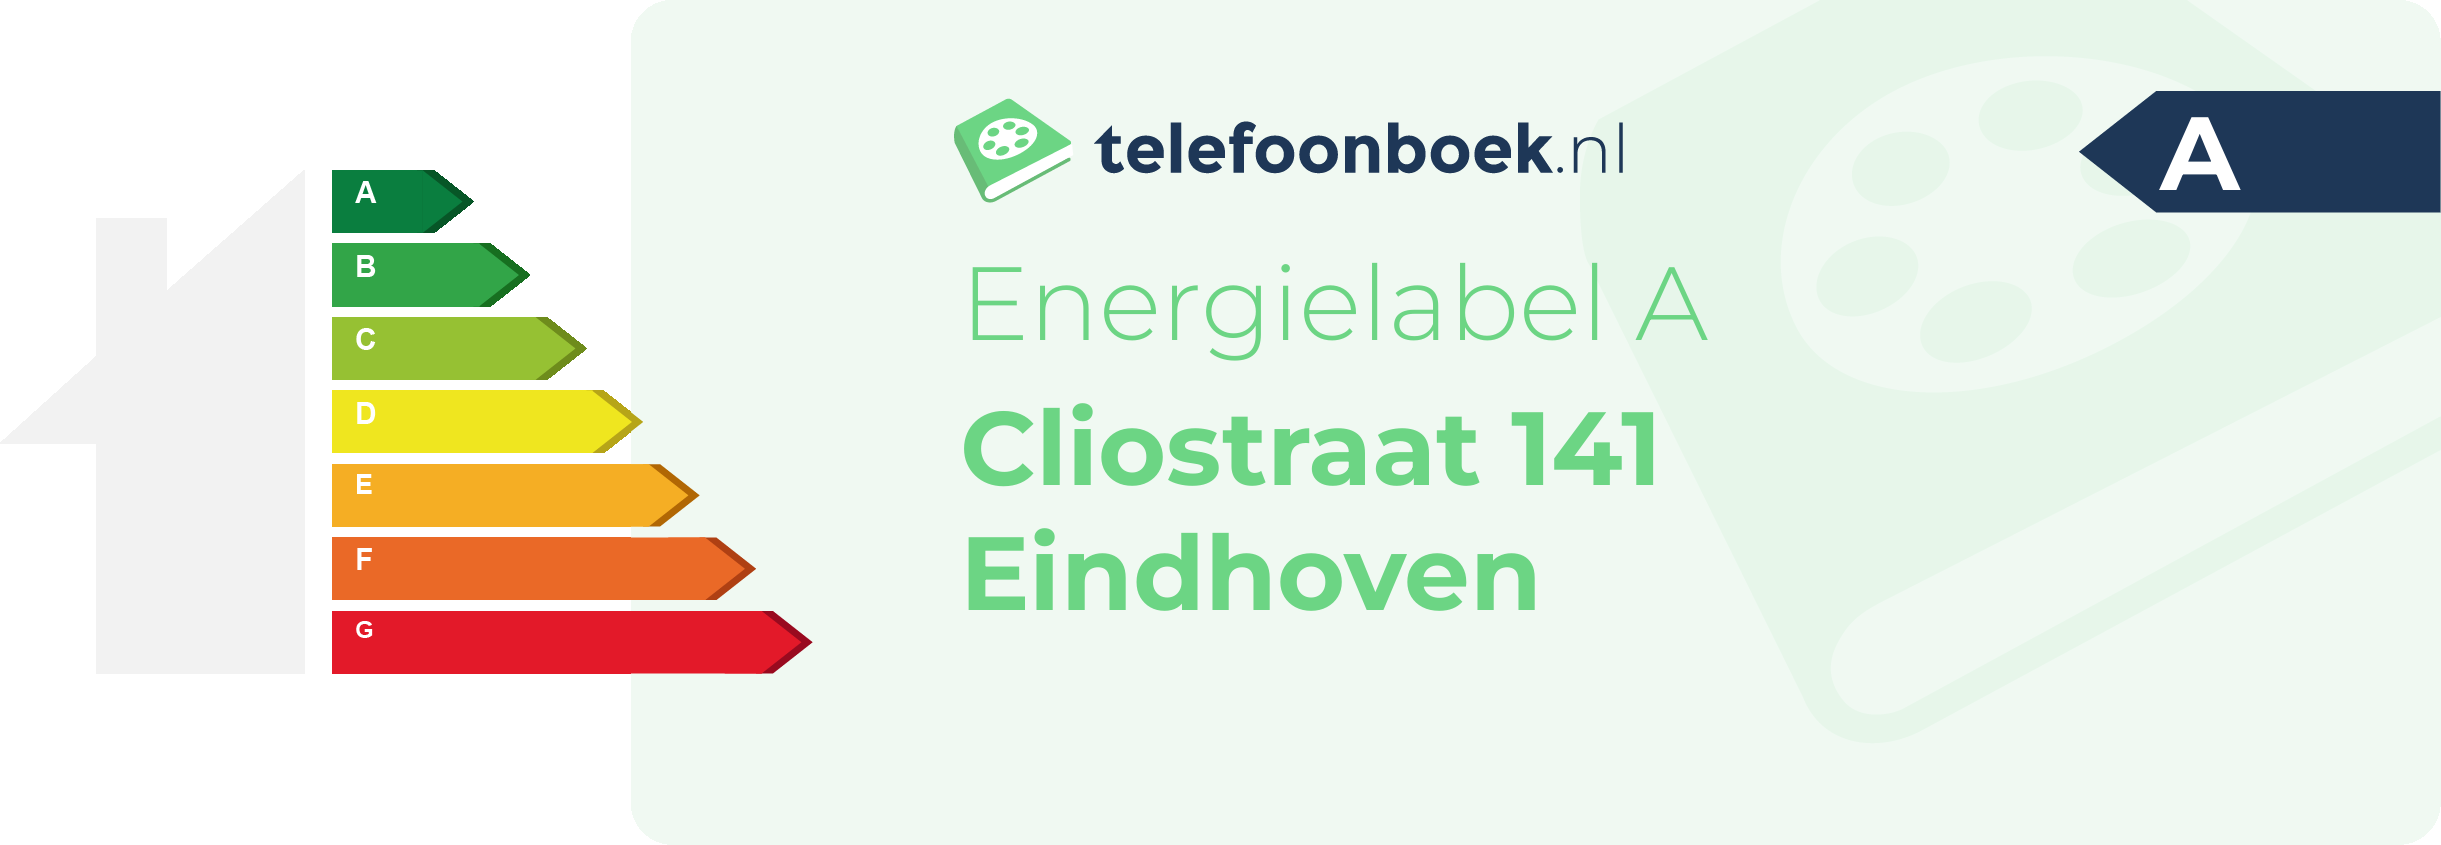 Energielabel Cliostraat 141 Eindhoven